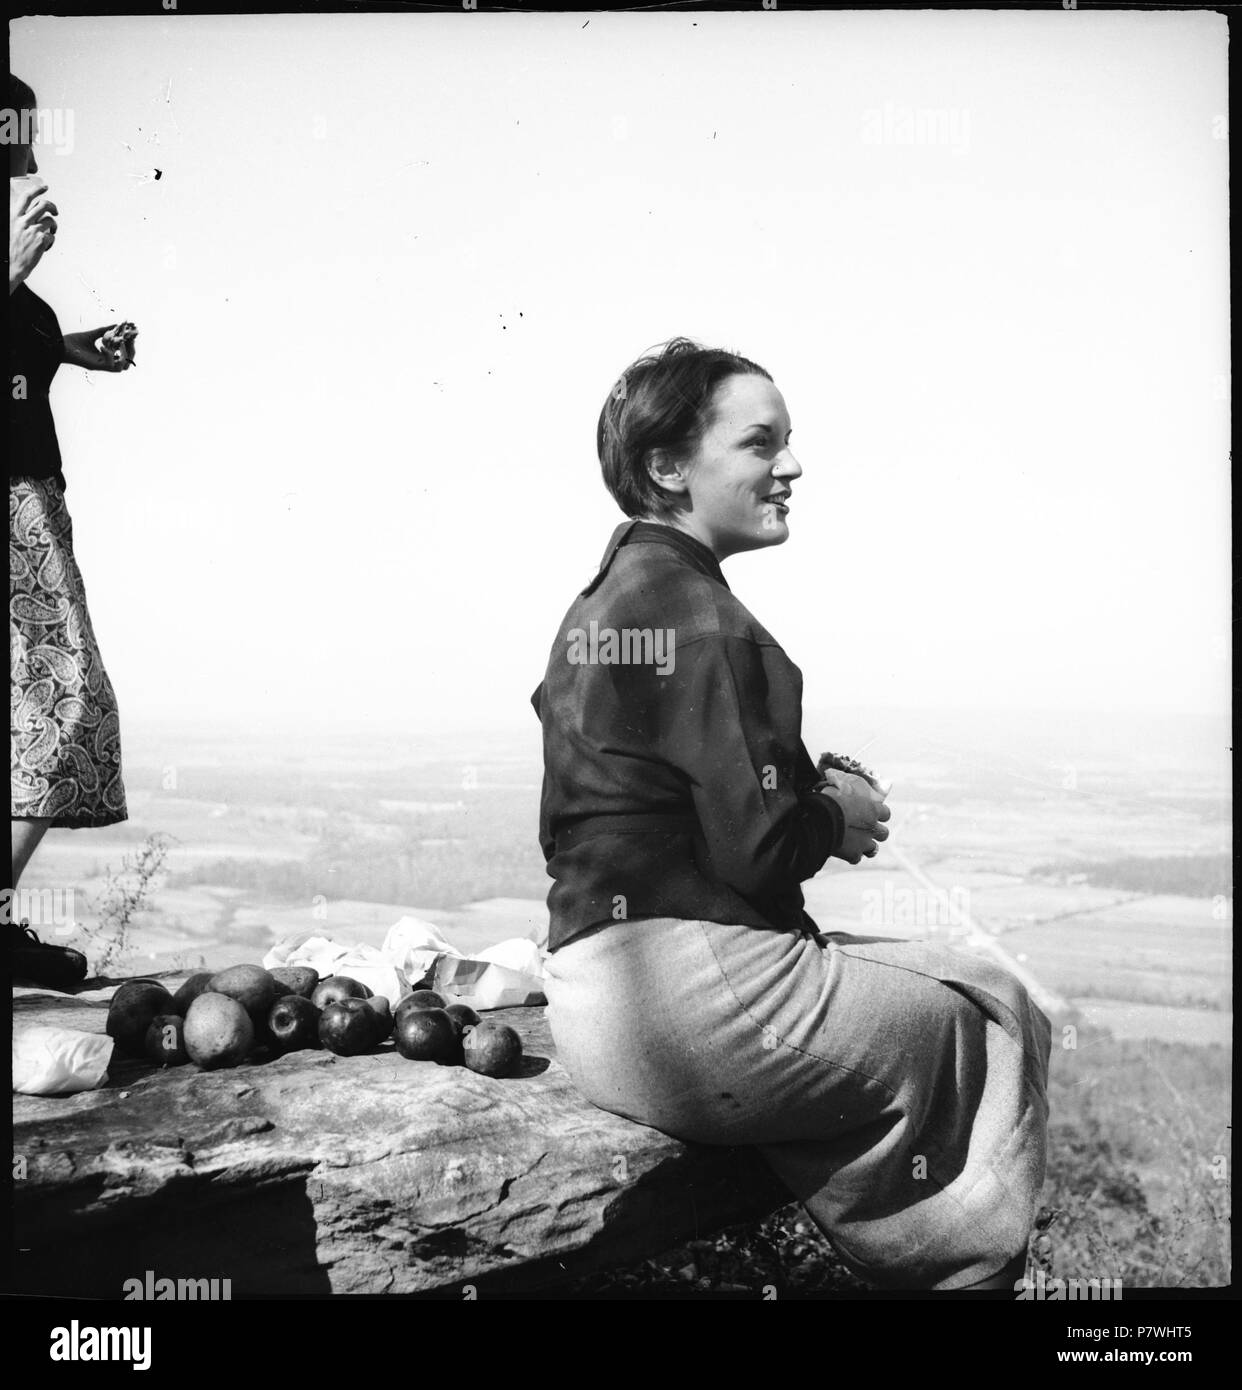 Stati Uniti d'America, Monteagle/TN: Highlander Folk School; Eine Frau sitzt auf einem Felsen. Dal 1936 fino al 1938 86 CH-NB - USA, Monteagle-TN- Highlander Folk School - Annemarie Schwarzenbach - SLA-Schwarzenbach-UN-5-10-123 Foto Stock